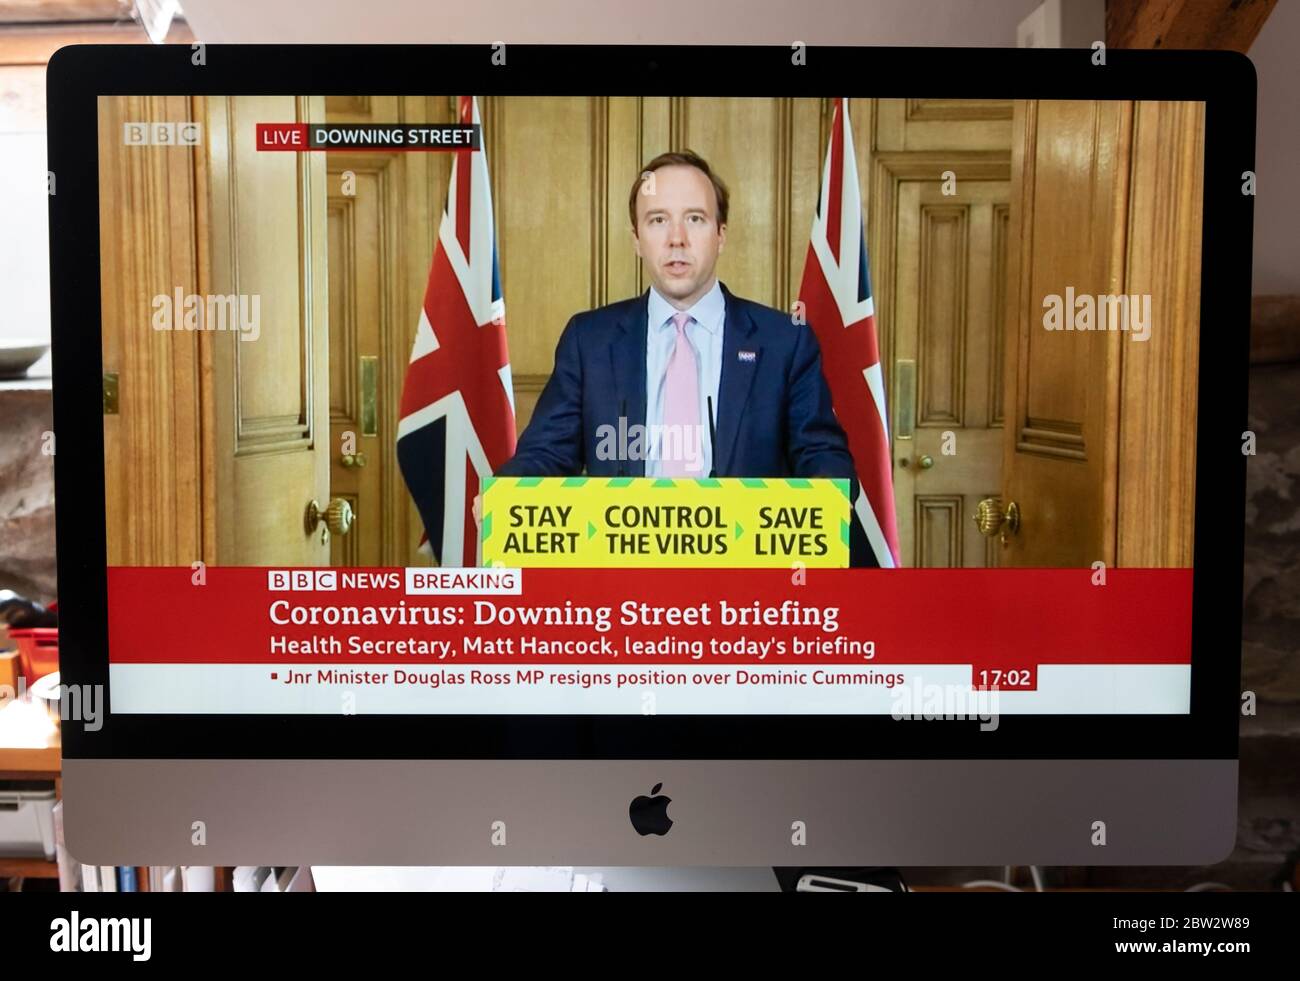 Matt Hancock, député secrétaire à la Santé au coronavirus Downing Street BBC news briefing TV programme sur écran d'ordinateur le 26 mai 2020 à Londres Angleterre Royaume-Uni Banque D'Images